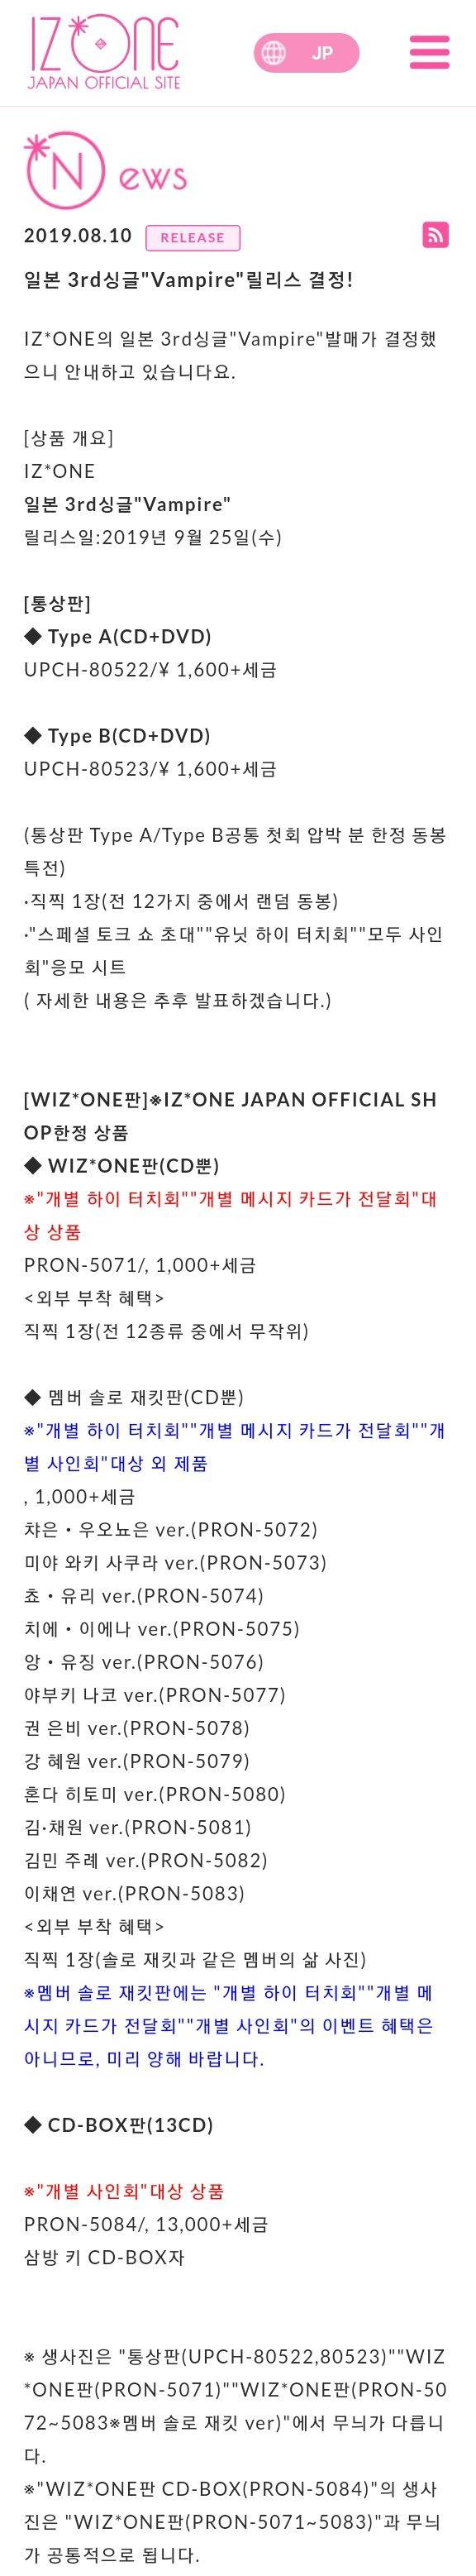 IZ*ONE(아이즈원) 일본 세번째 싱글발표